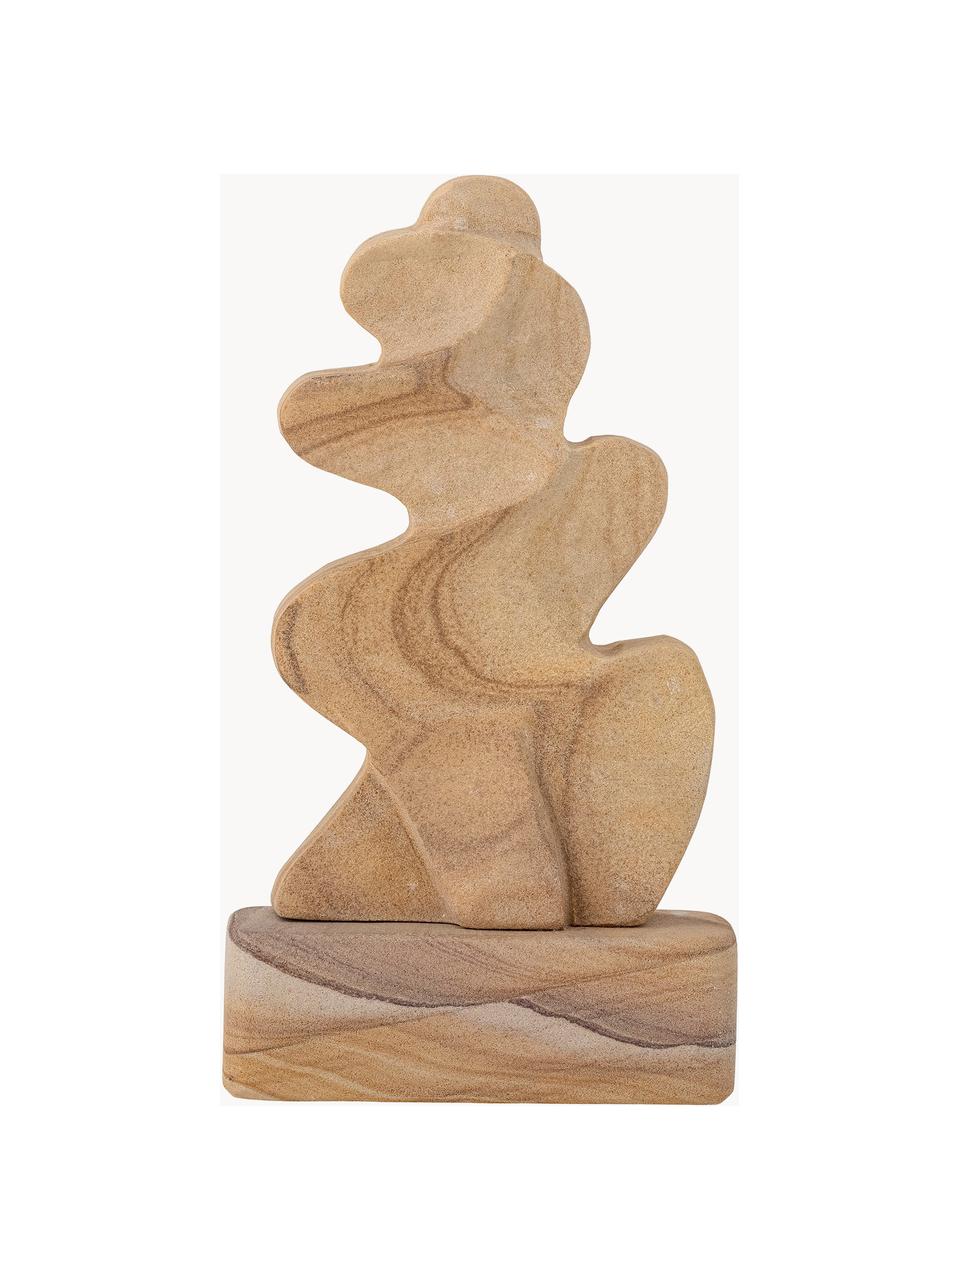 Deko-Objekt Keri aus Sandstein, Sandstein, Beige, B 13 x H 23 cm